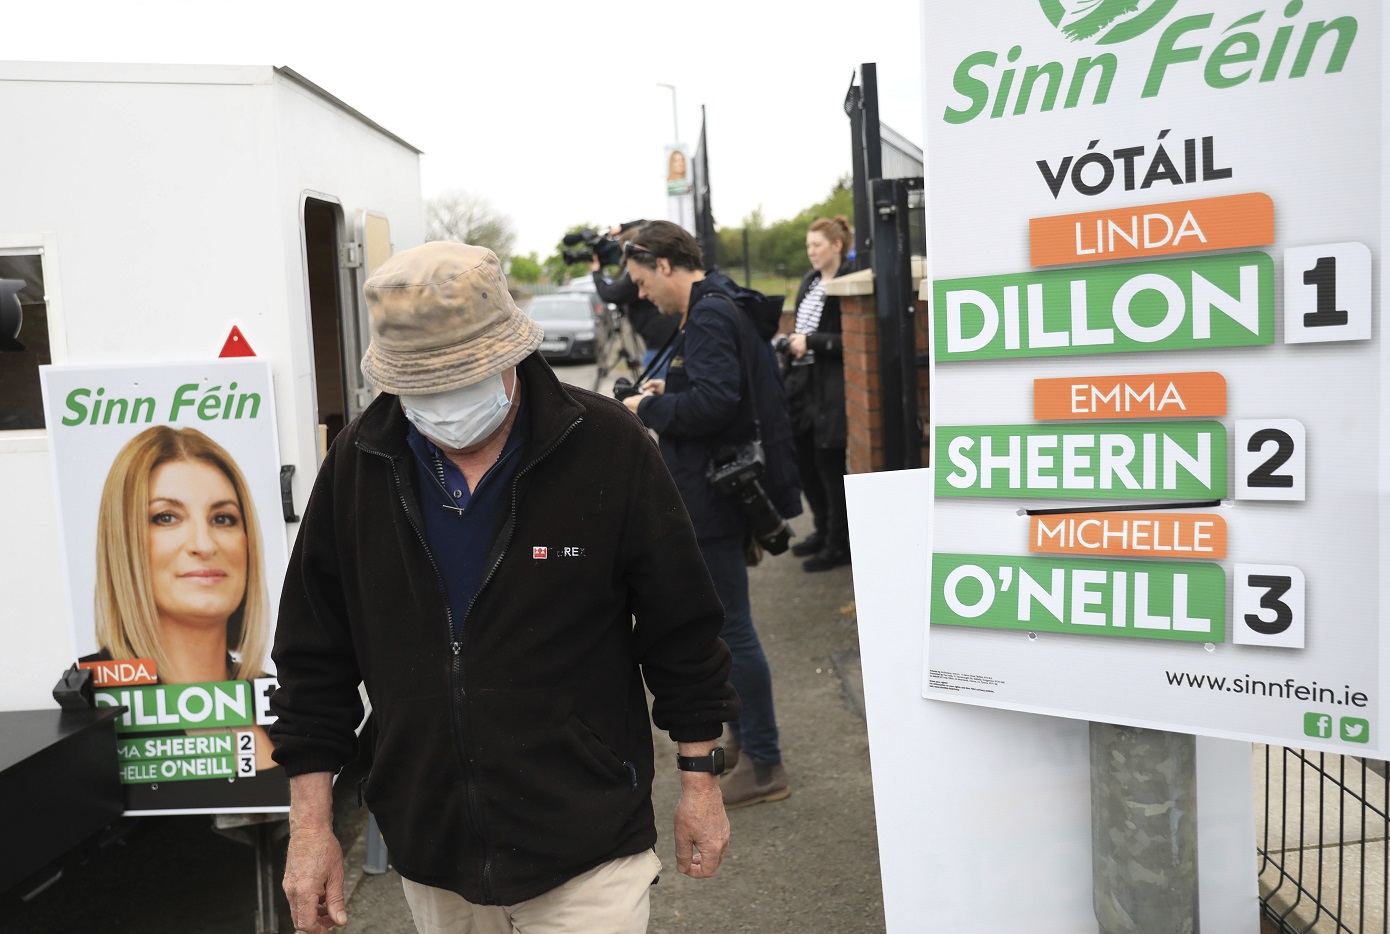 Το Σιν Φέιν έγινε το μεγαλύτερο κόμμα από τη Βόρεια Ιρλανδία στο βρετανικό κοινοβούλιο